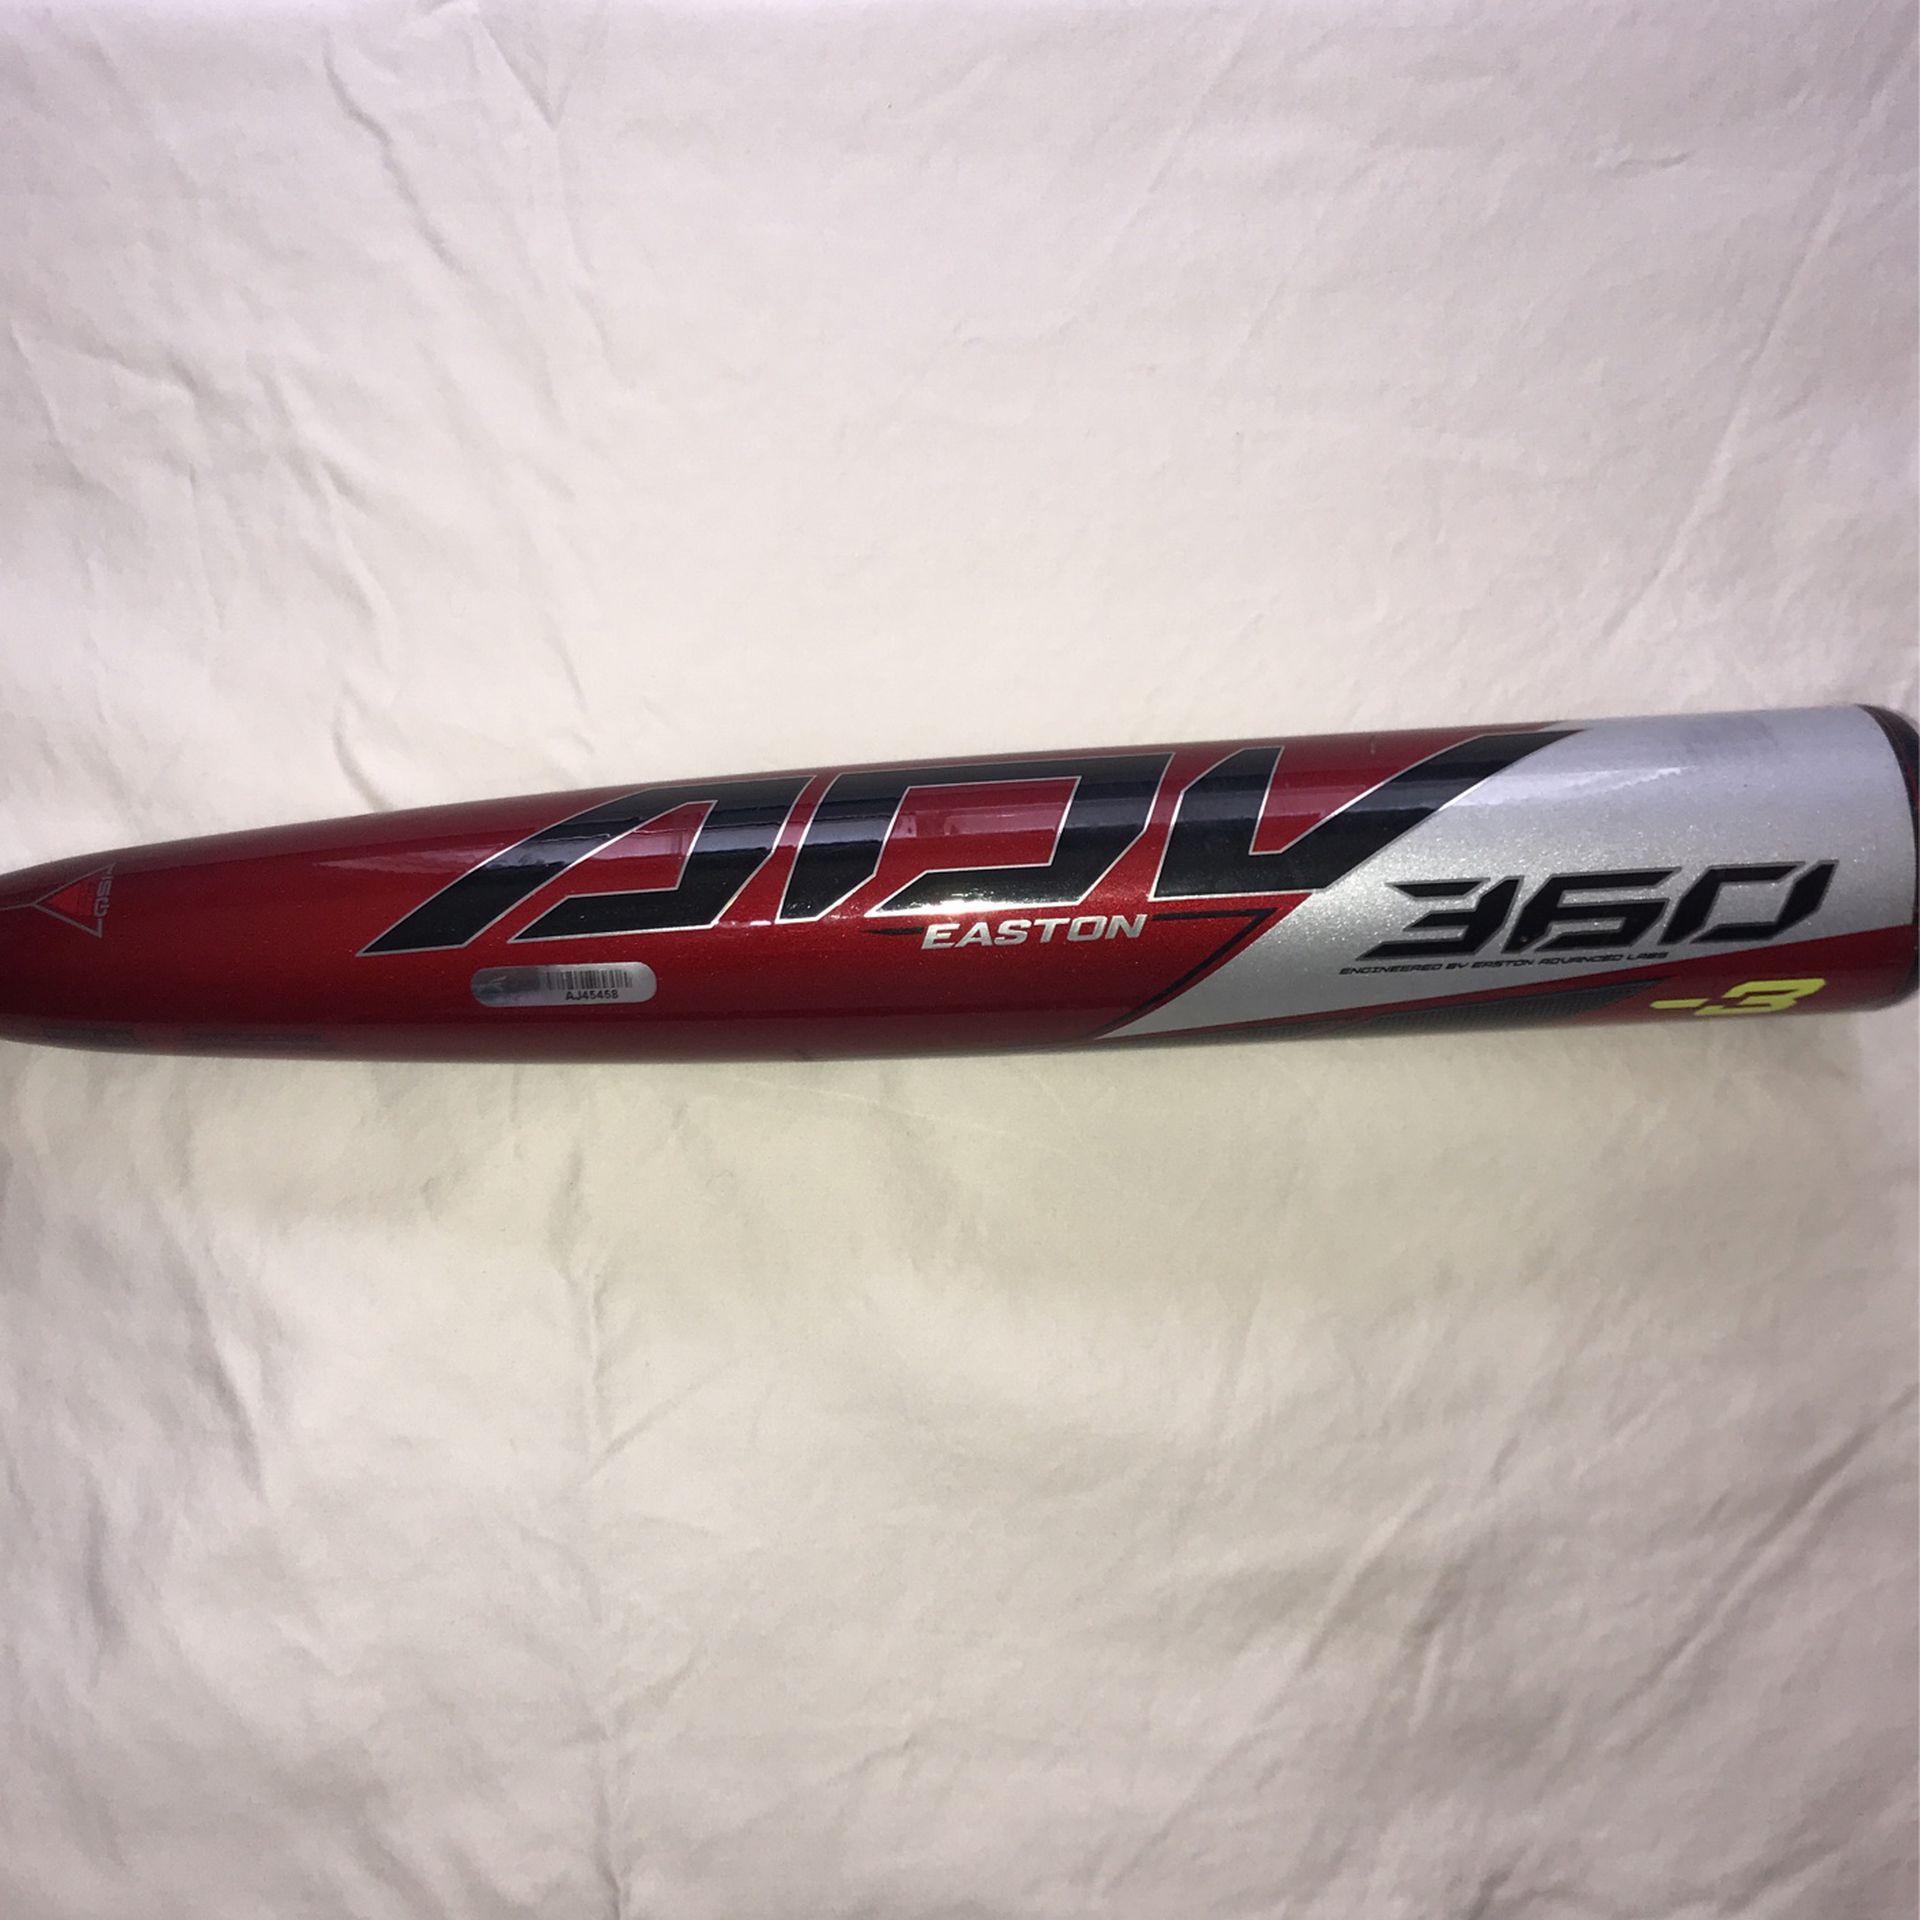 Easton ADV 360 -3 BBCOR Baseball Bat